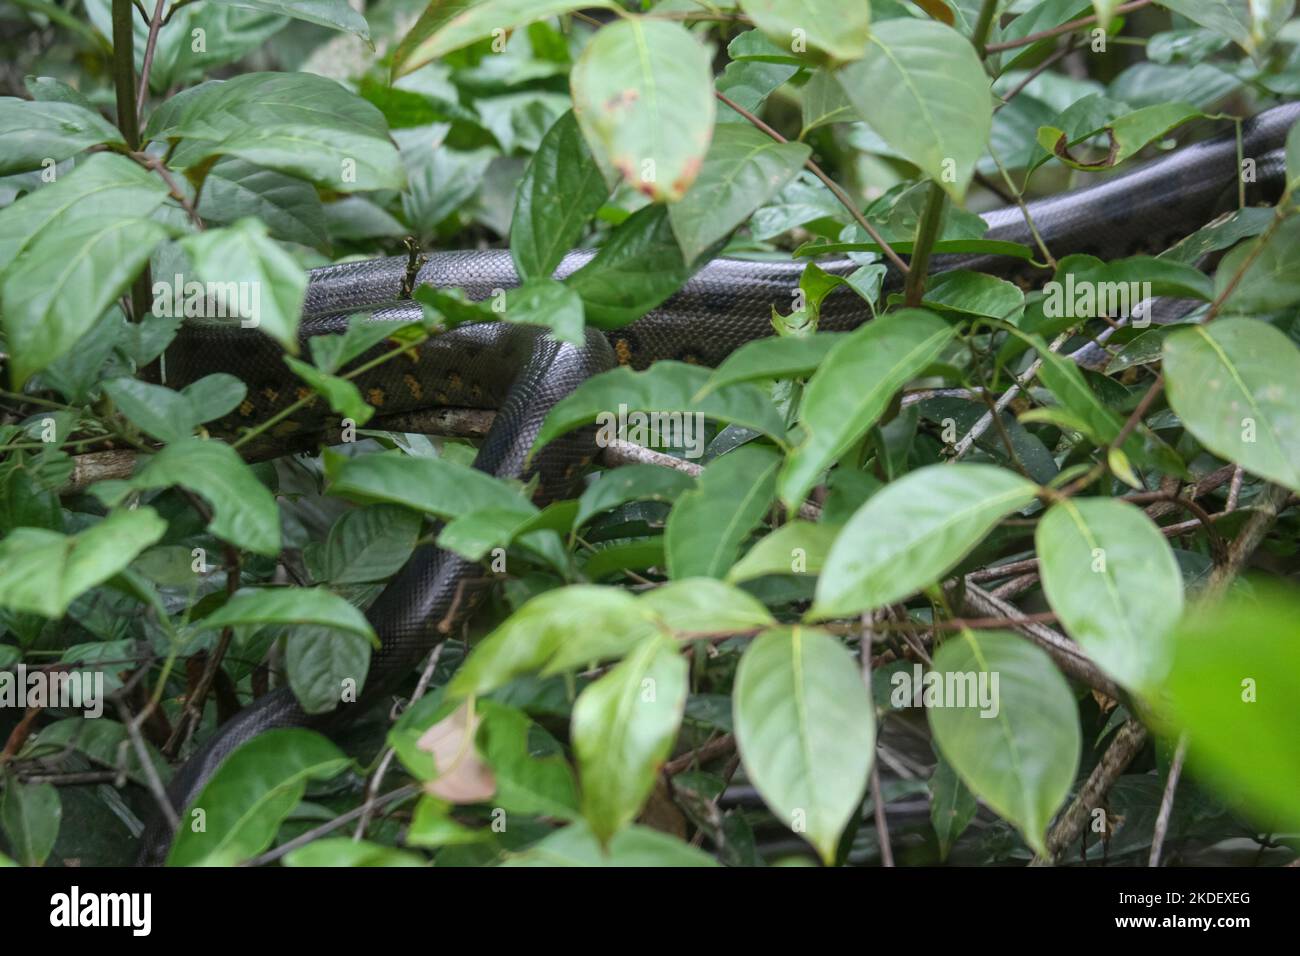 Eine wilde grüne Anakonda (Eunectes murinus), die weltweit größte ruhende Schlangenart im Wildreservat Cuyabeno im ecuadorianischen Amazonas. Die grüne ana Stockfoto